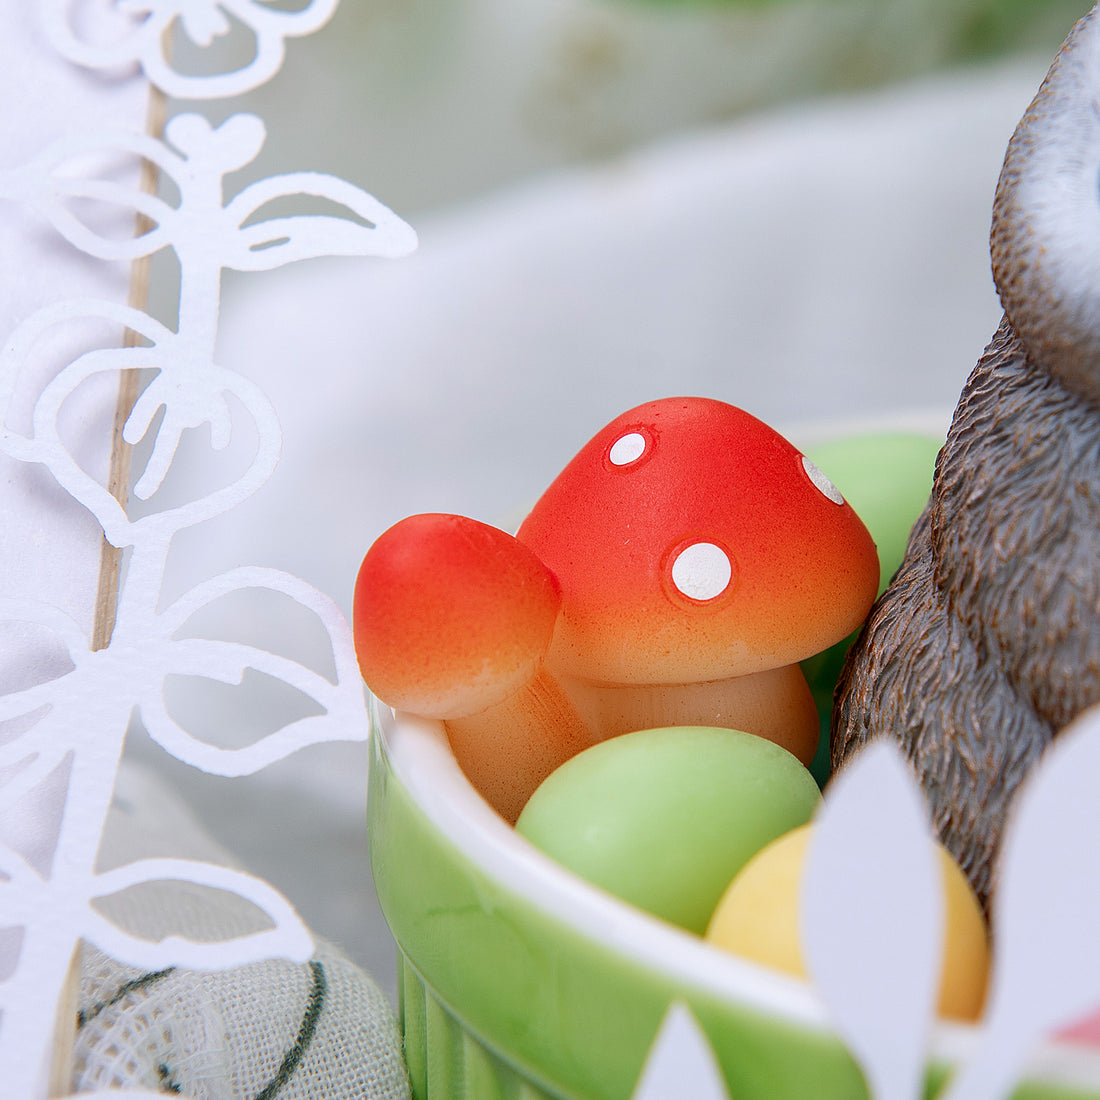 The cute little mushroom on the bunny egg bowl.